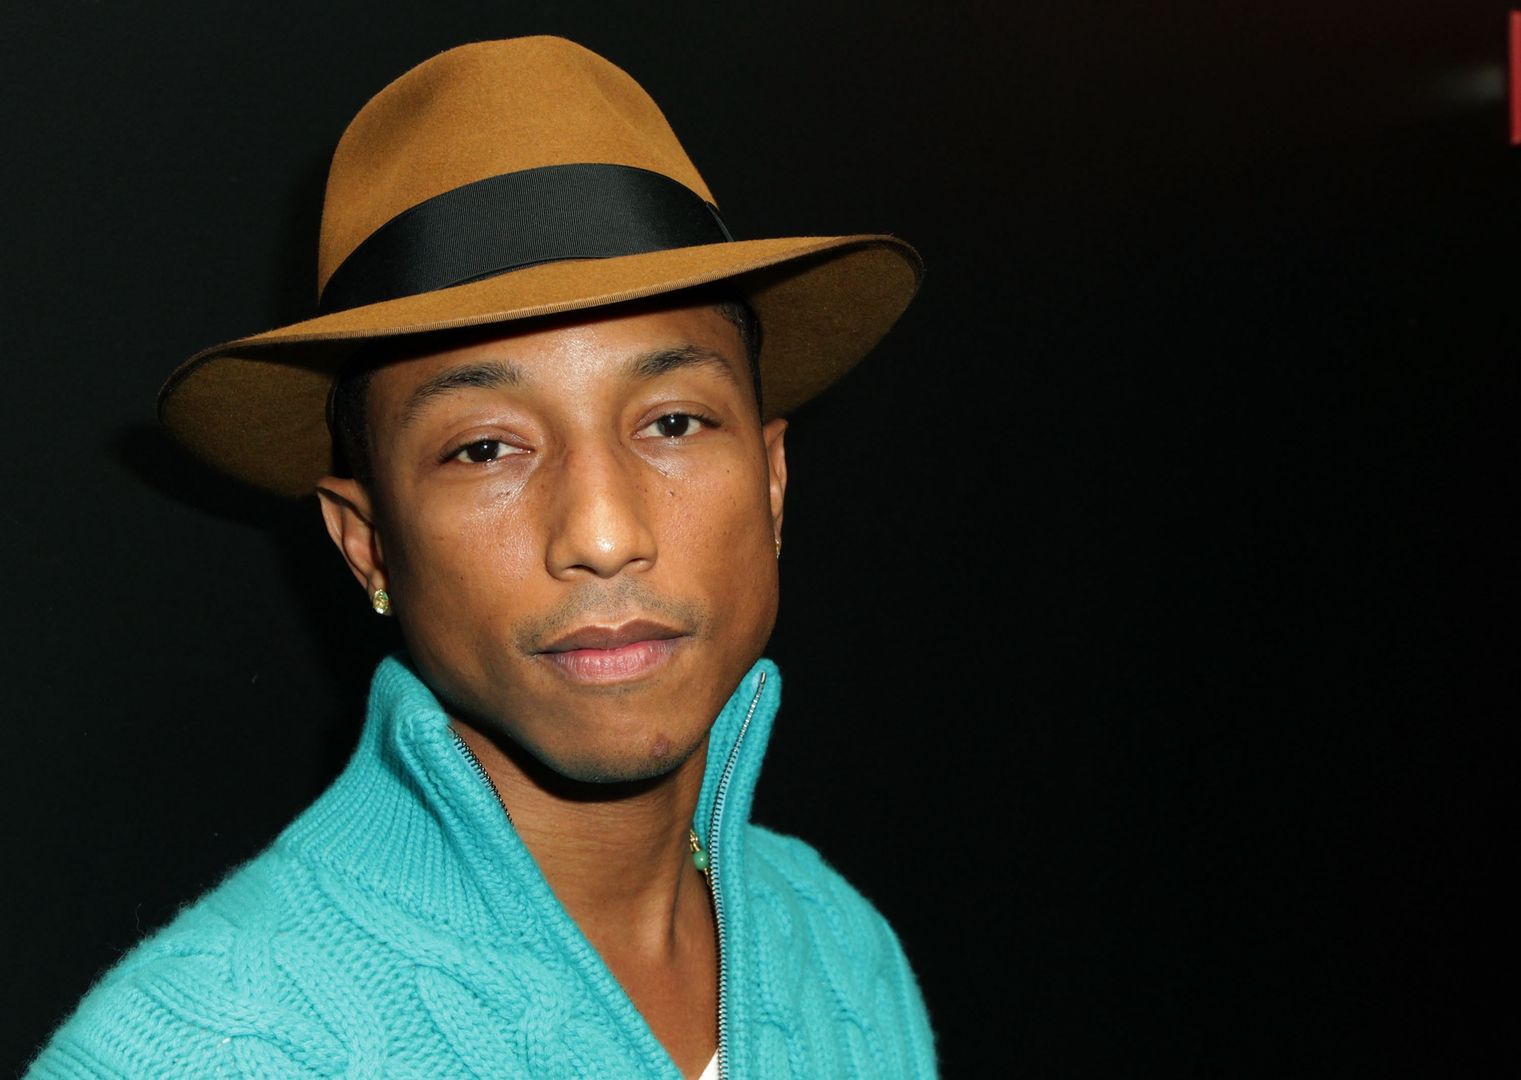 Pharrell Williams pogrążony w żałobie. Chce śledztwa federalnego